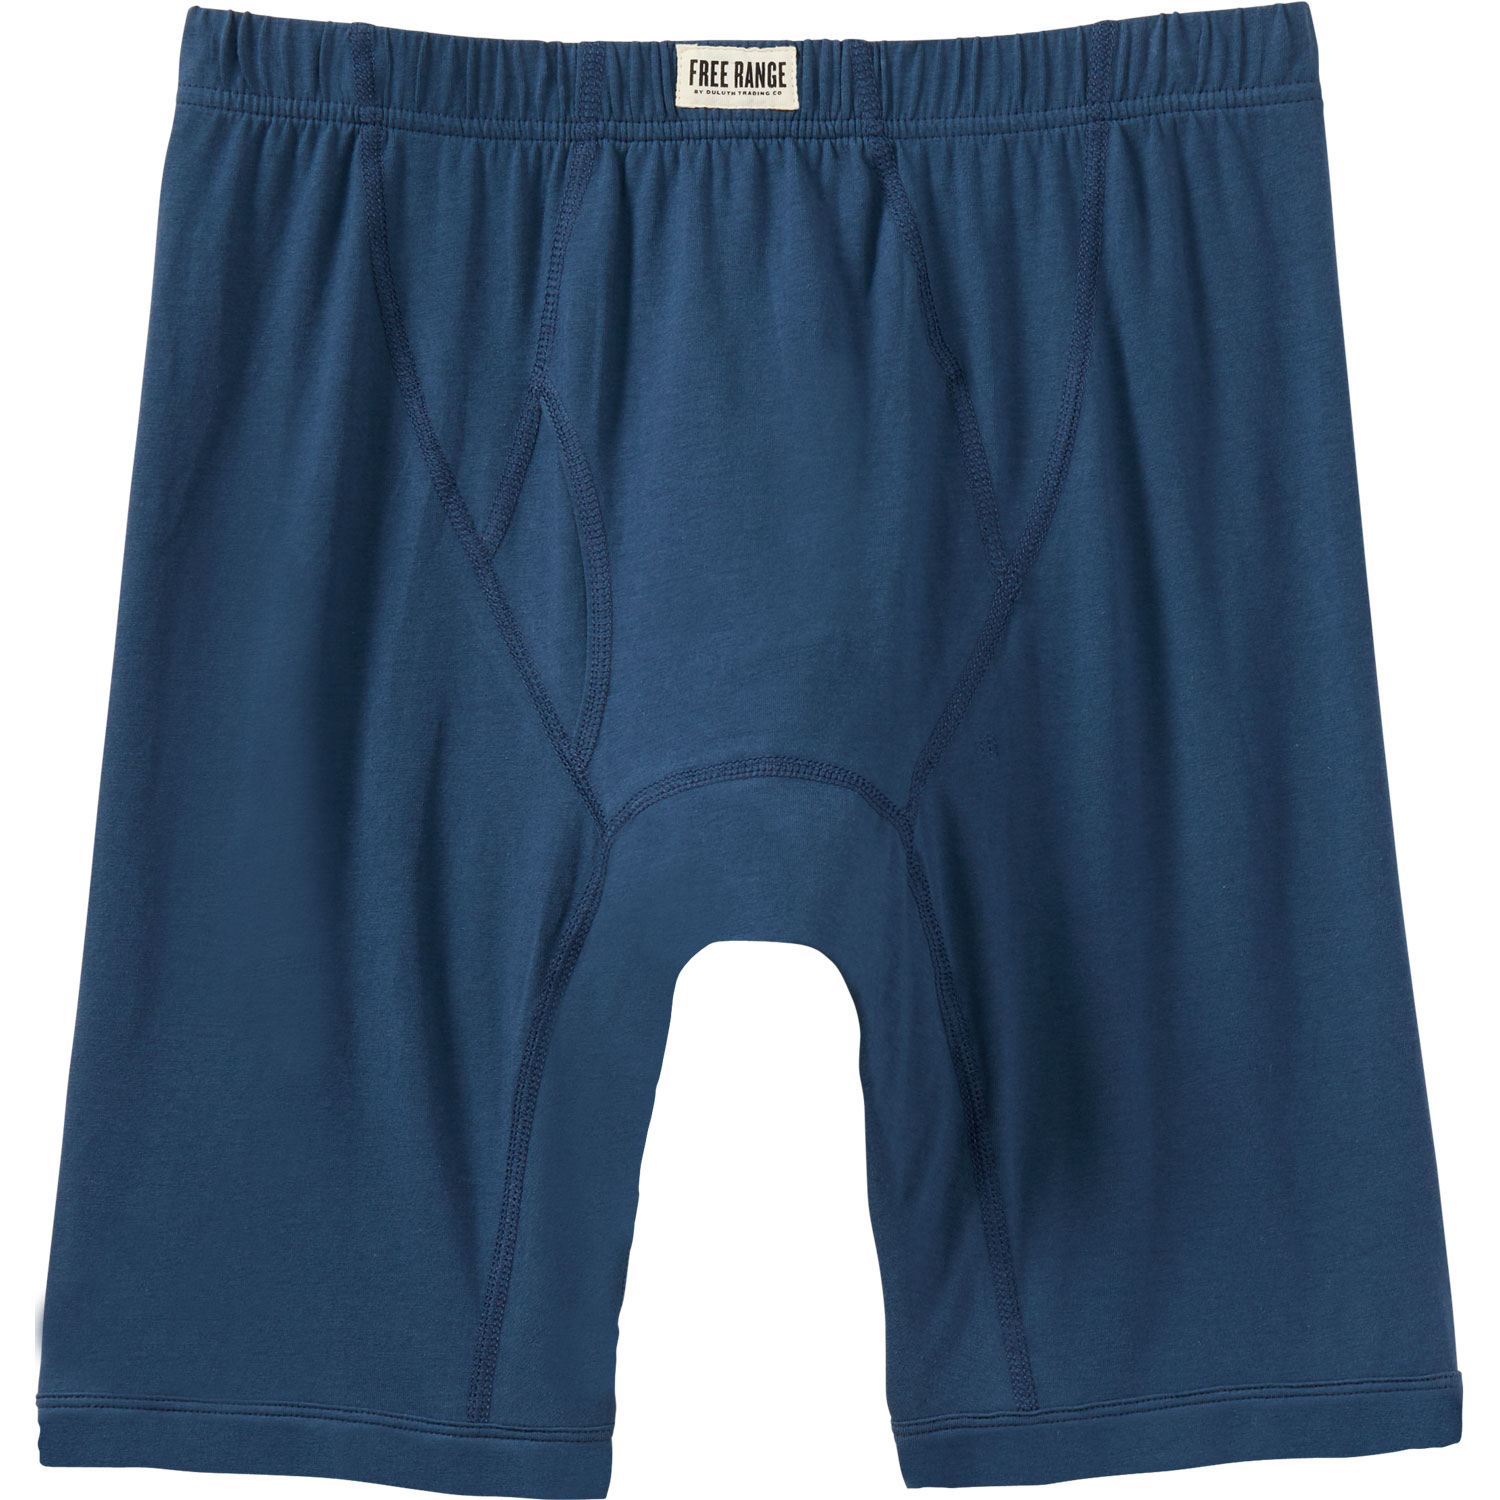 Cotton Boxer Shorts, Cotton Underpants, Boxer Shorts Boy